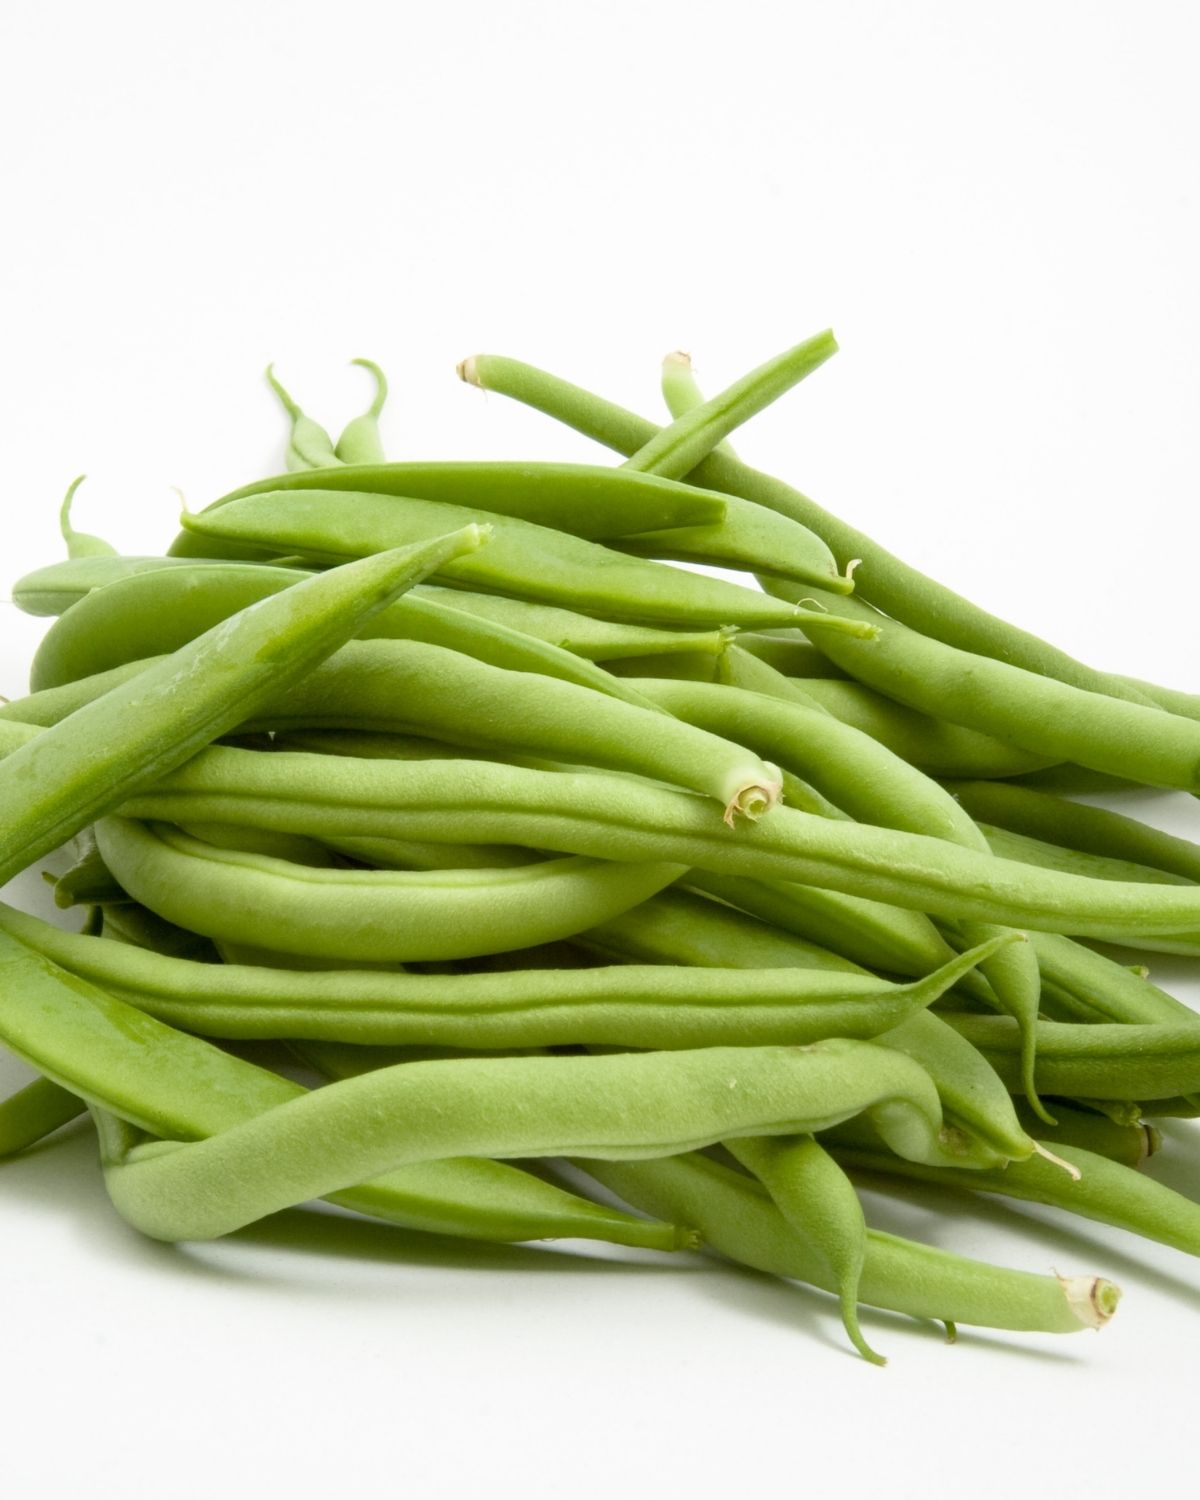 Green Beans for casserole.